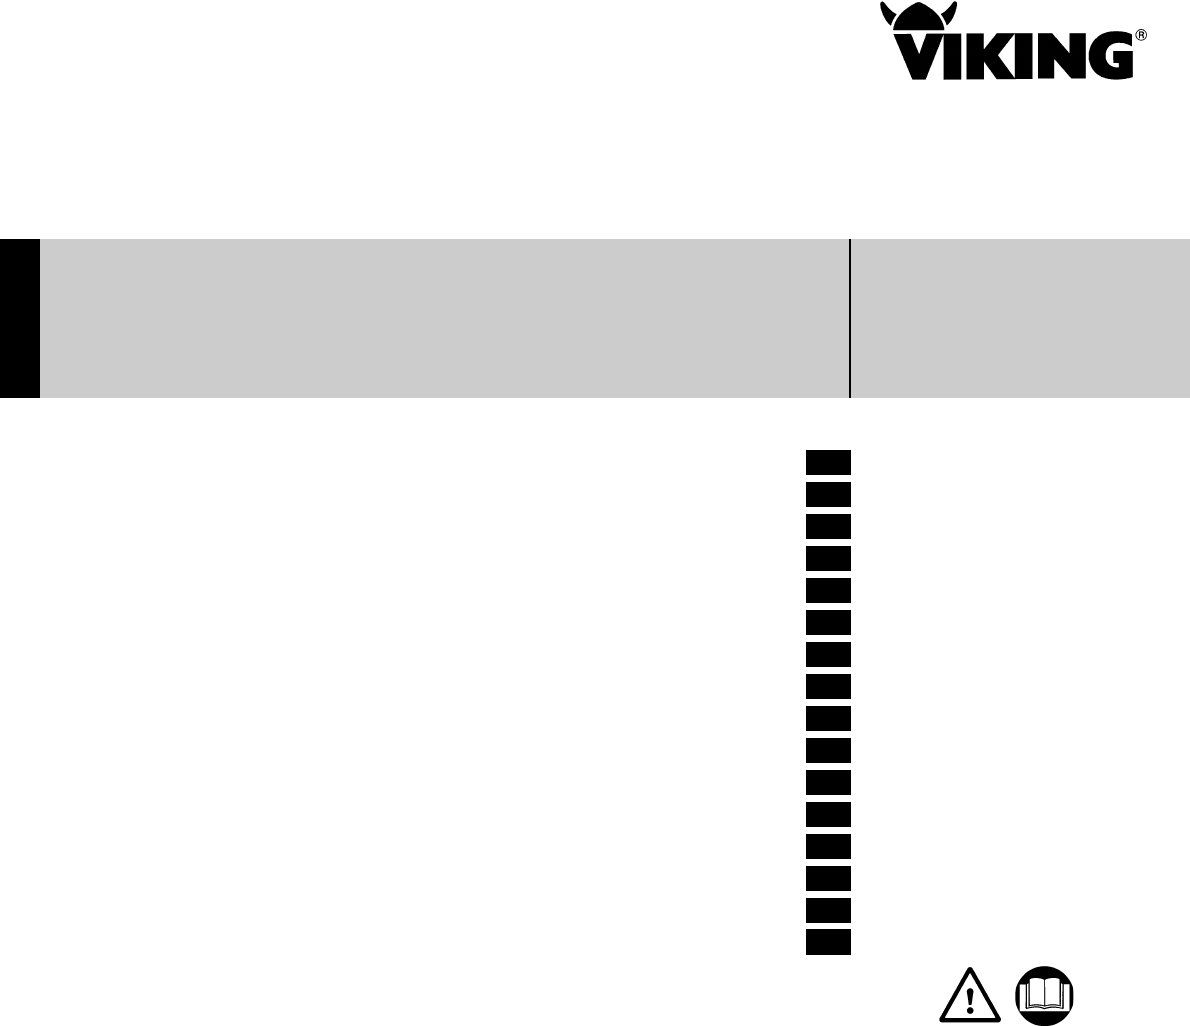 Viking mower user manual